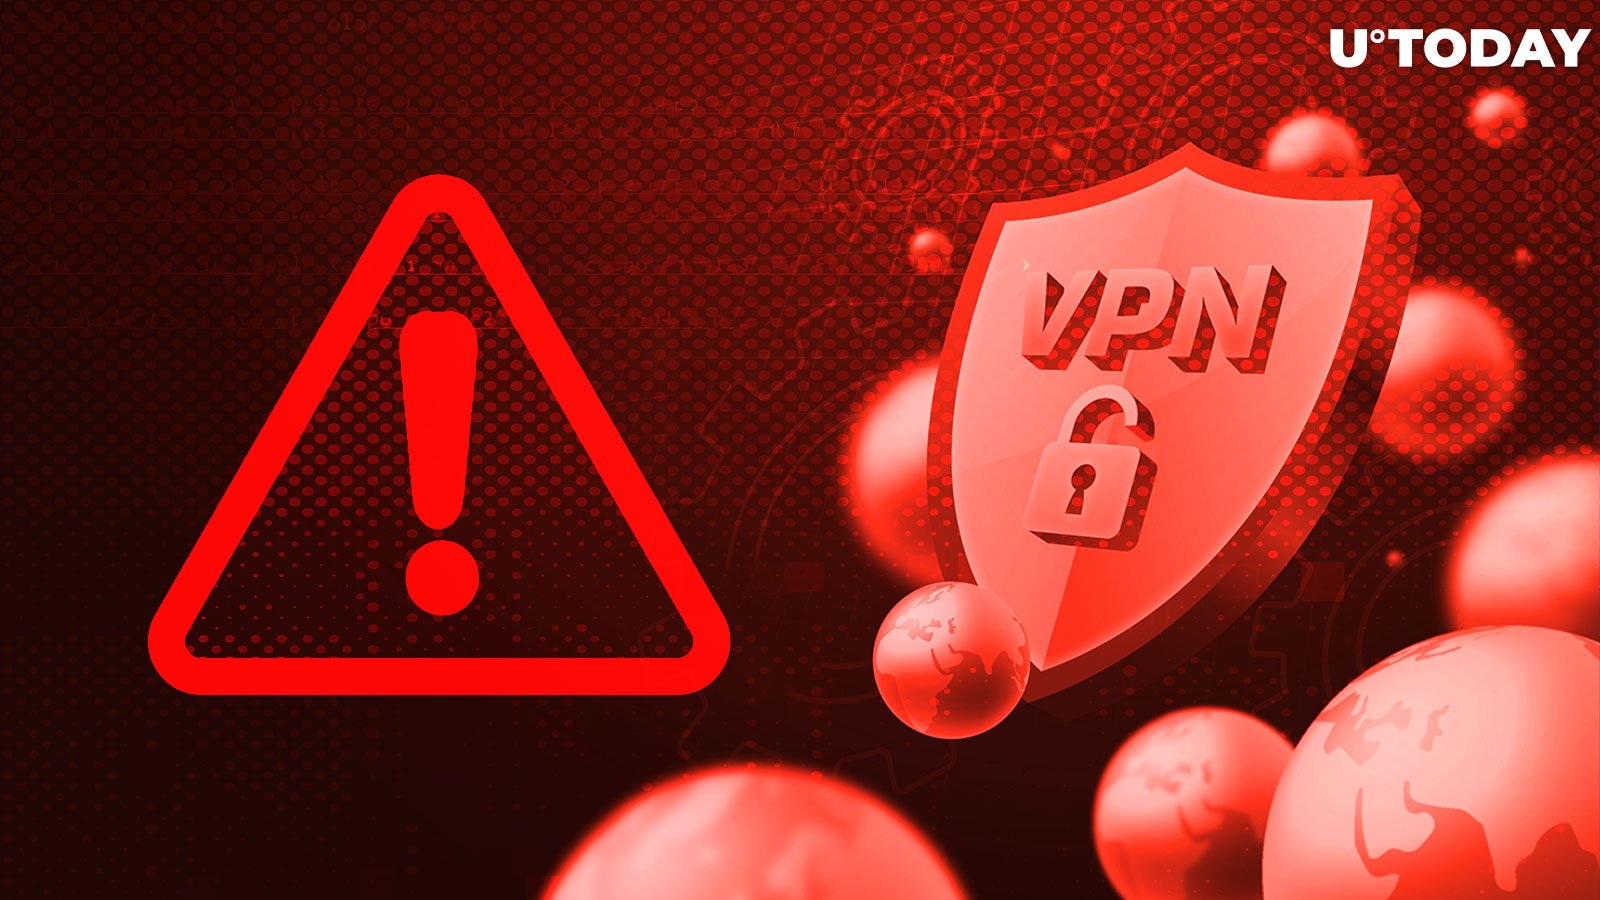 Crypto Theft Alert: New Malware Hijacks Coins via Phony VPN Services